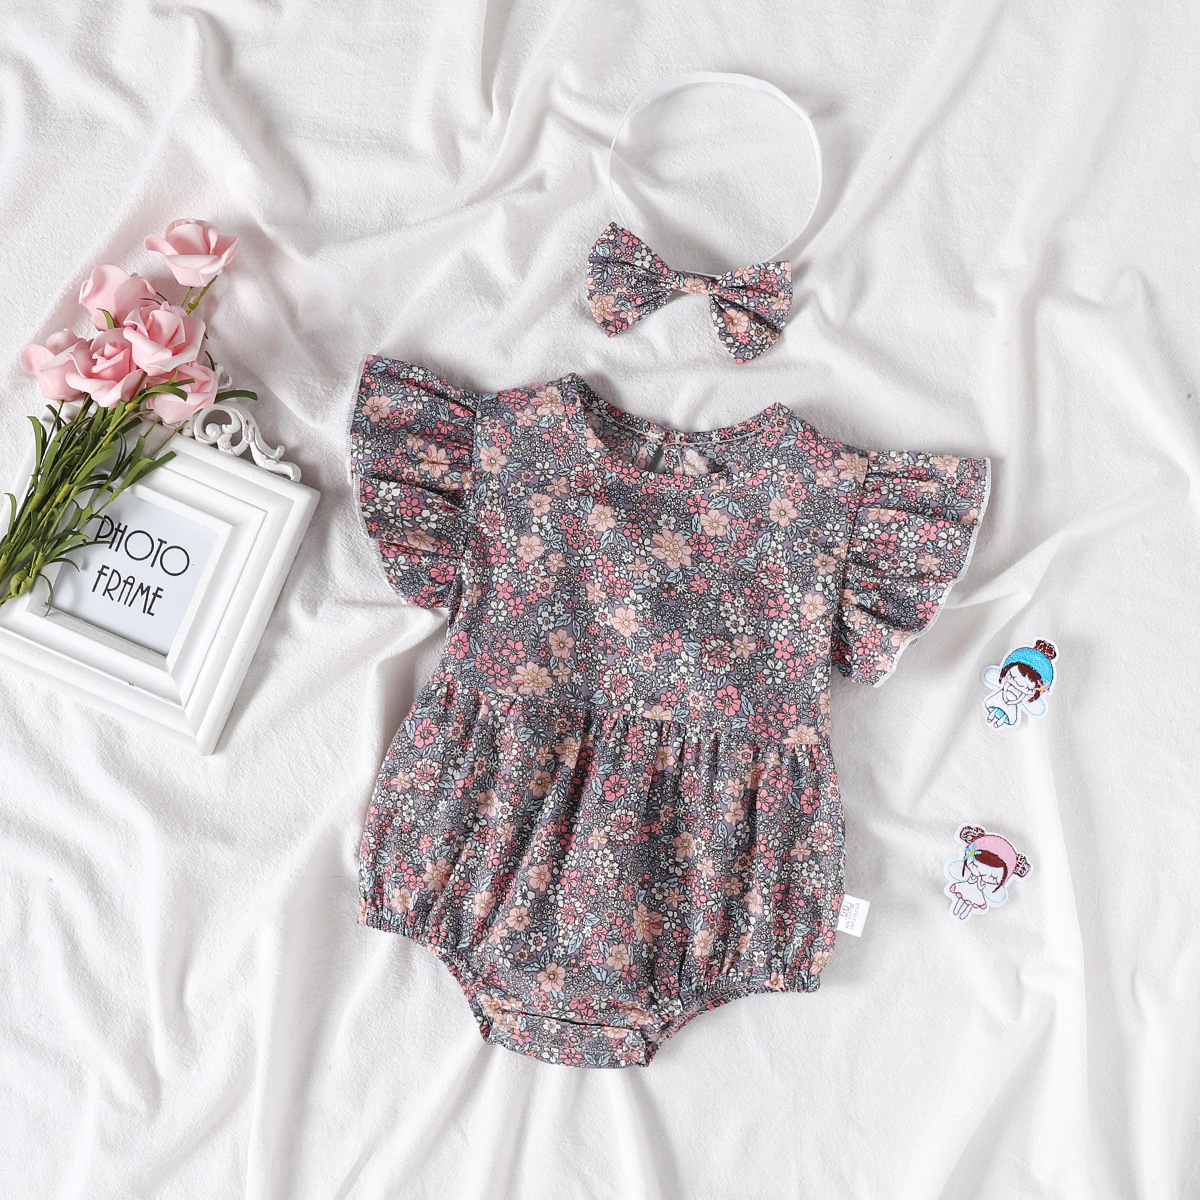 Bộ áo liền quần vải cotton in hoa màu tím + băng đô đáng yêu cho bé gái